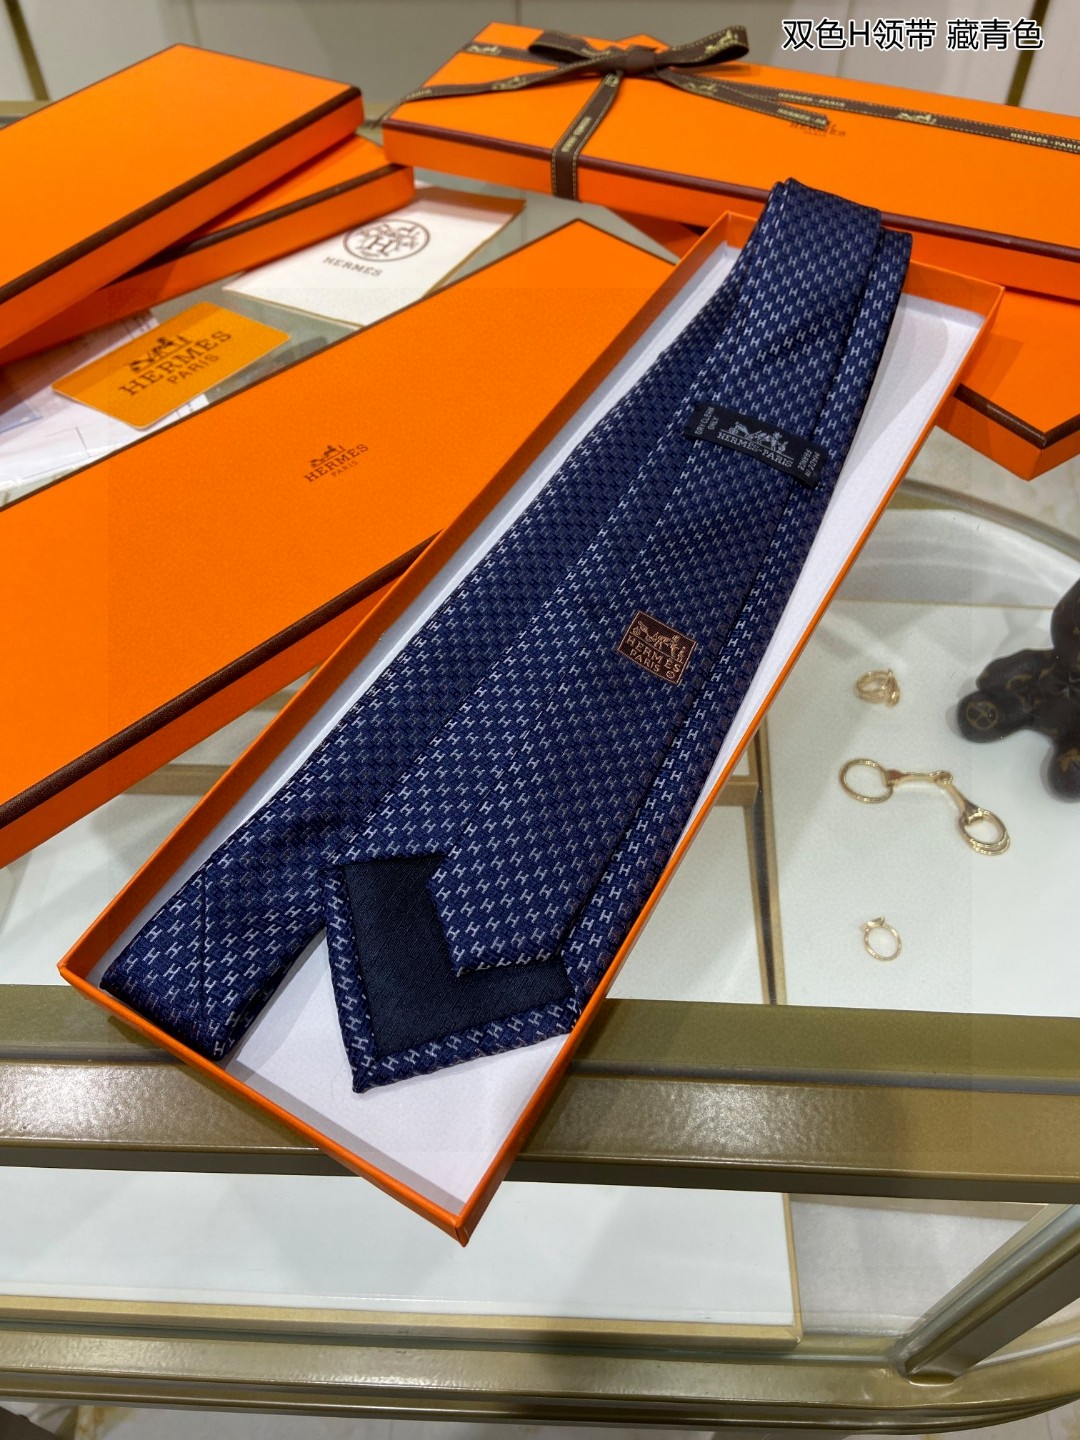 特价男士新款领带系列双色H领带稀有H家每年都有一千条不同印花的领带面世从最初的多以几何图案表现骑术活动为